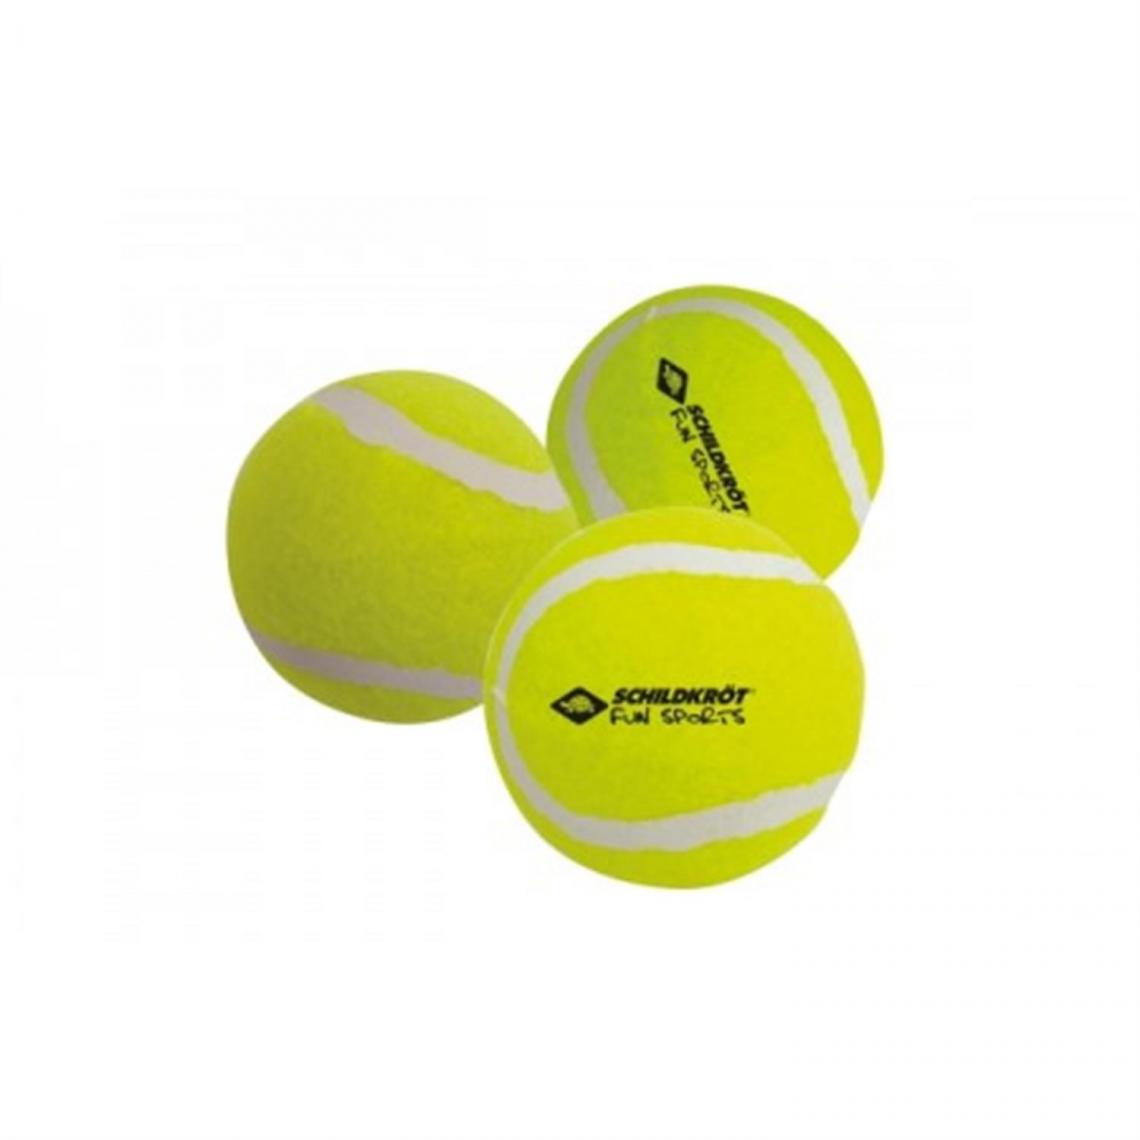 Mts Sportartikel - MTS Sportartikel 970048 - Set de 3 balles de tennis - Jeux de récréation